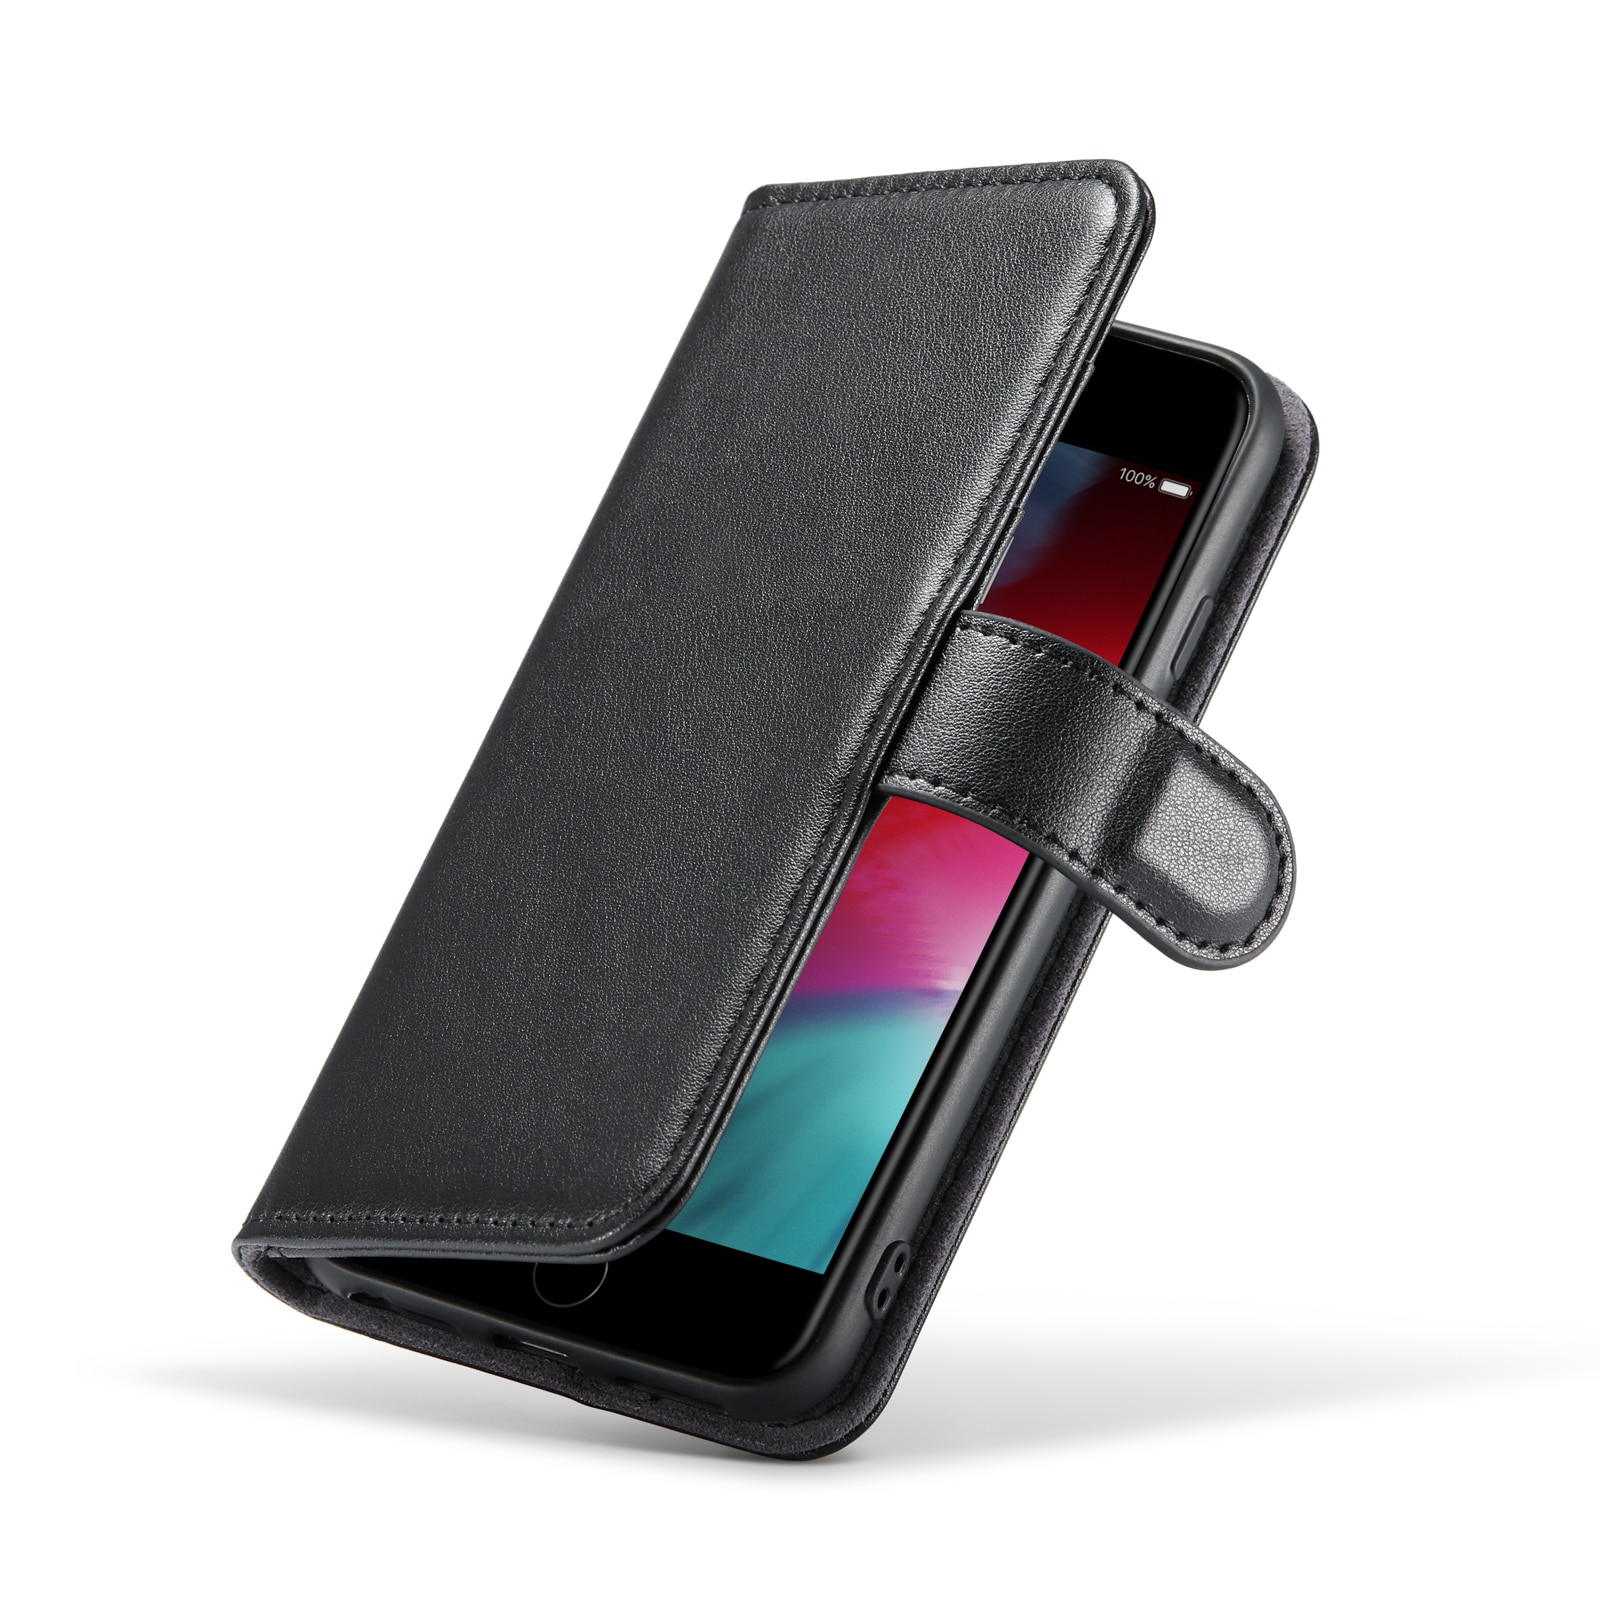 iPhone SE (2020) Plånboksfodral i Äkta Läder, svart